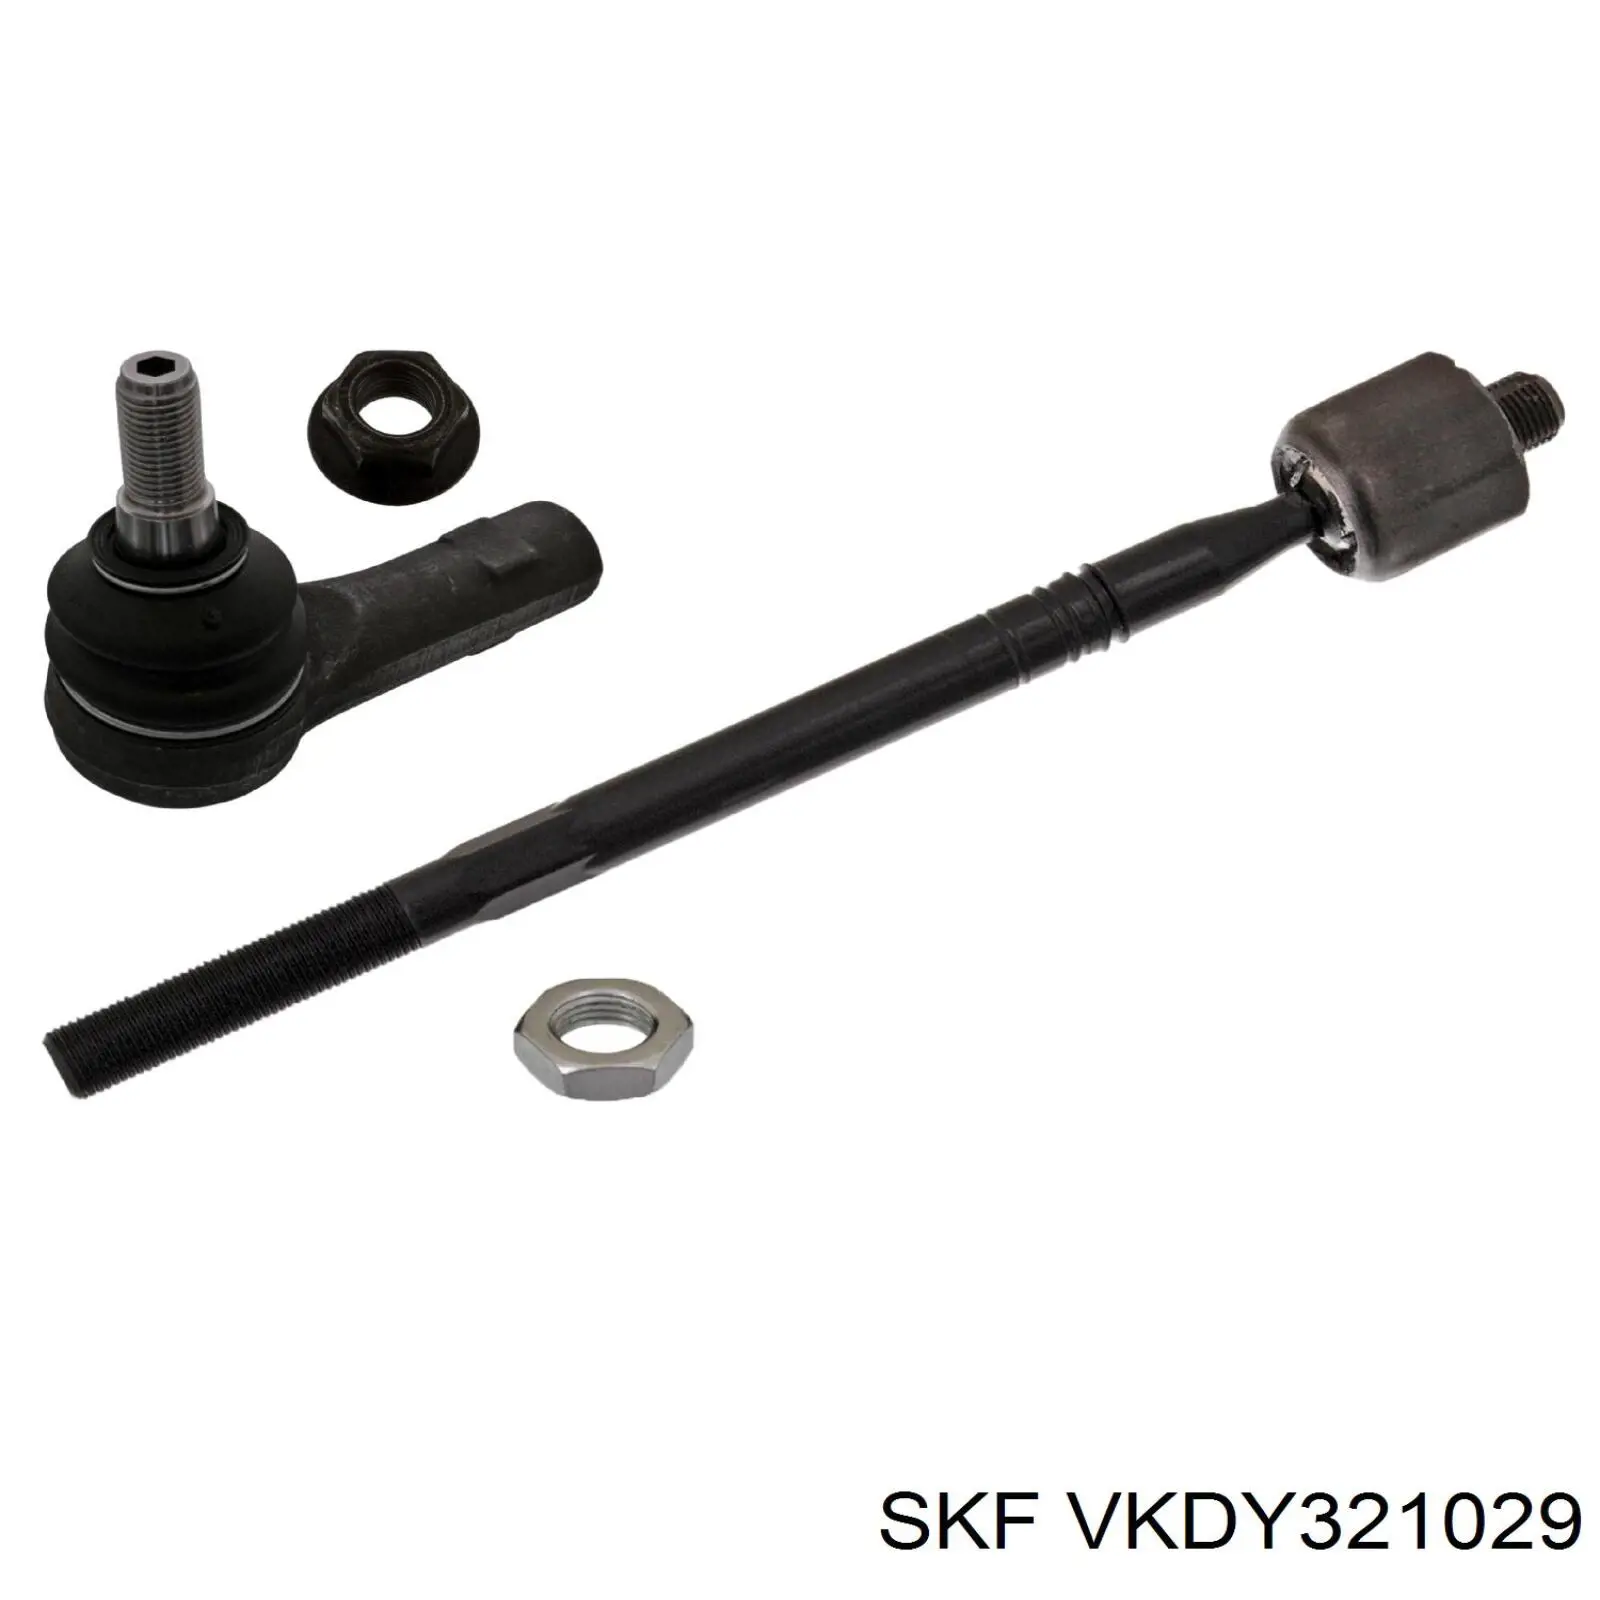 VKDY 321029 SKF barra de acoplamiento